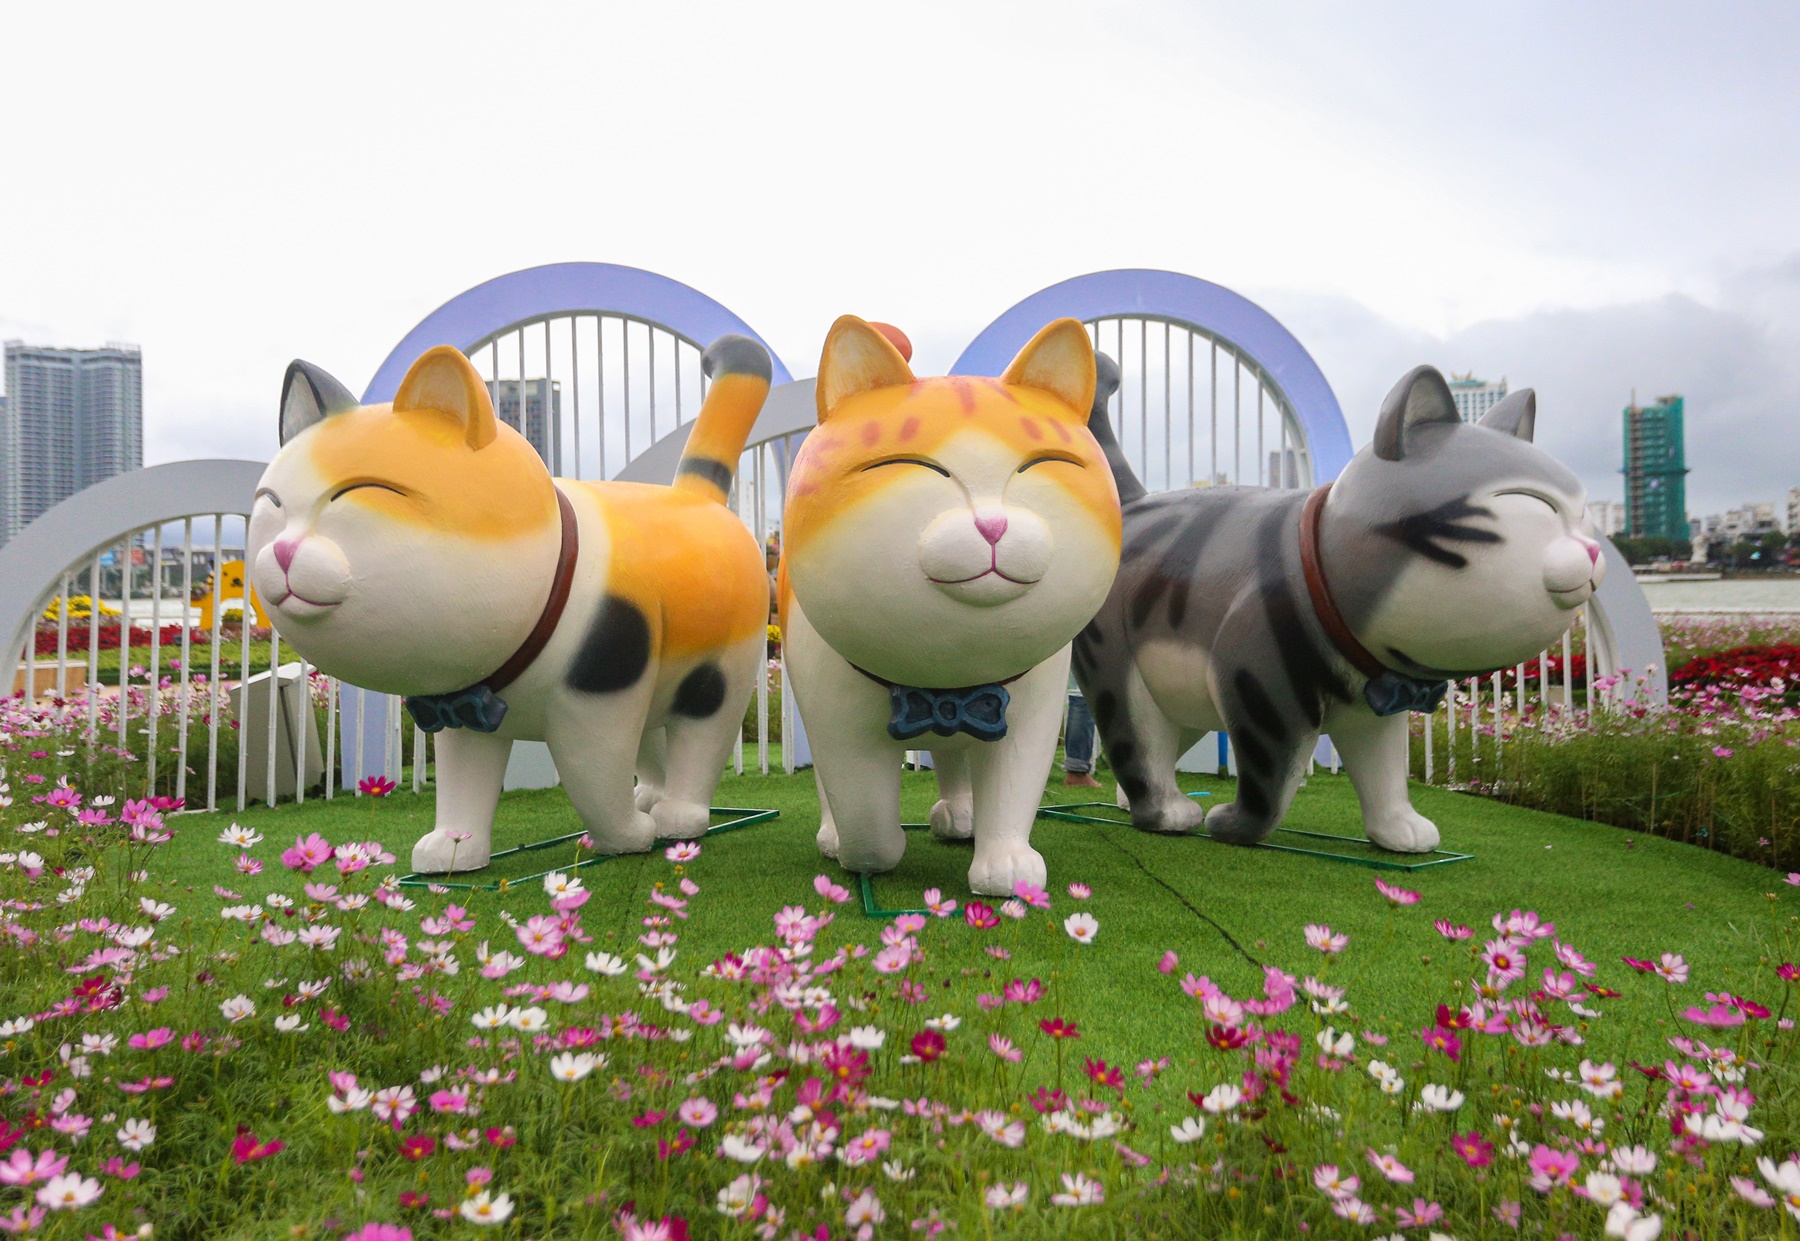 Lộ diện đàn linh vật mèo đủ sắc thái tại đường hoa Xuân Đà Nẵng - Ảnh 2.